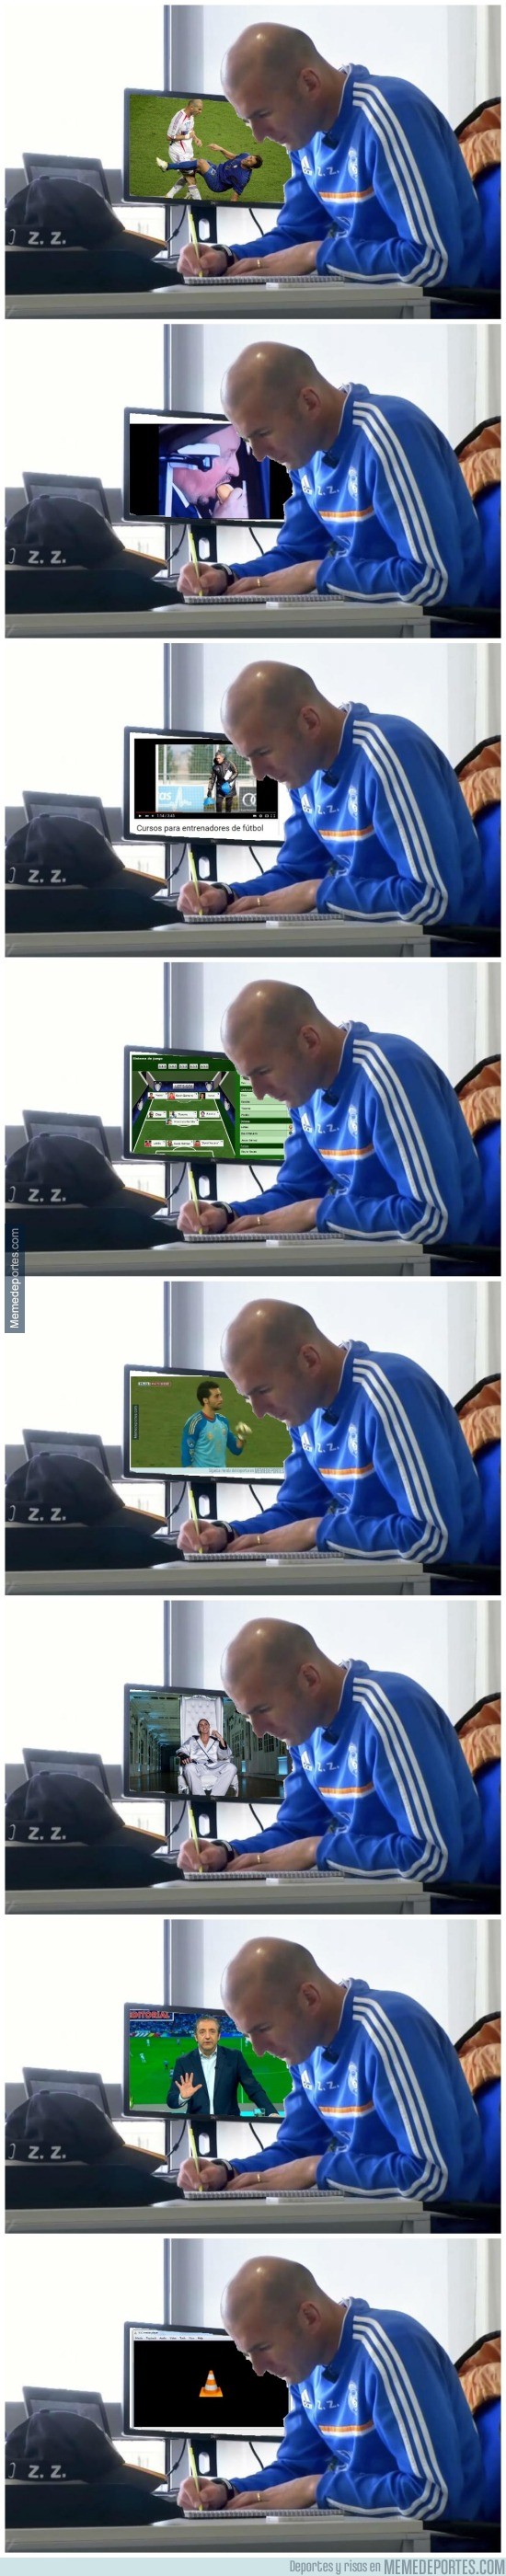 781458 - Zidane y lo que ve en su PC en el @realmadrid